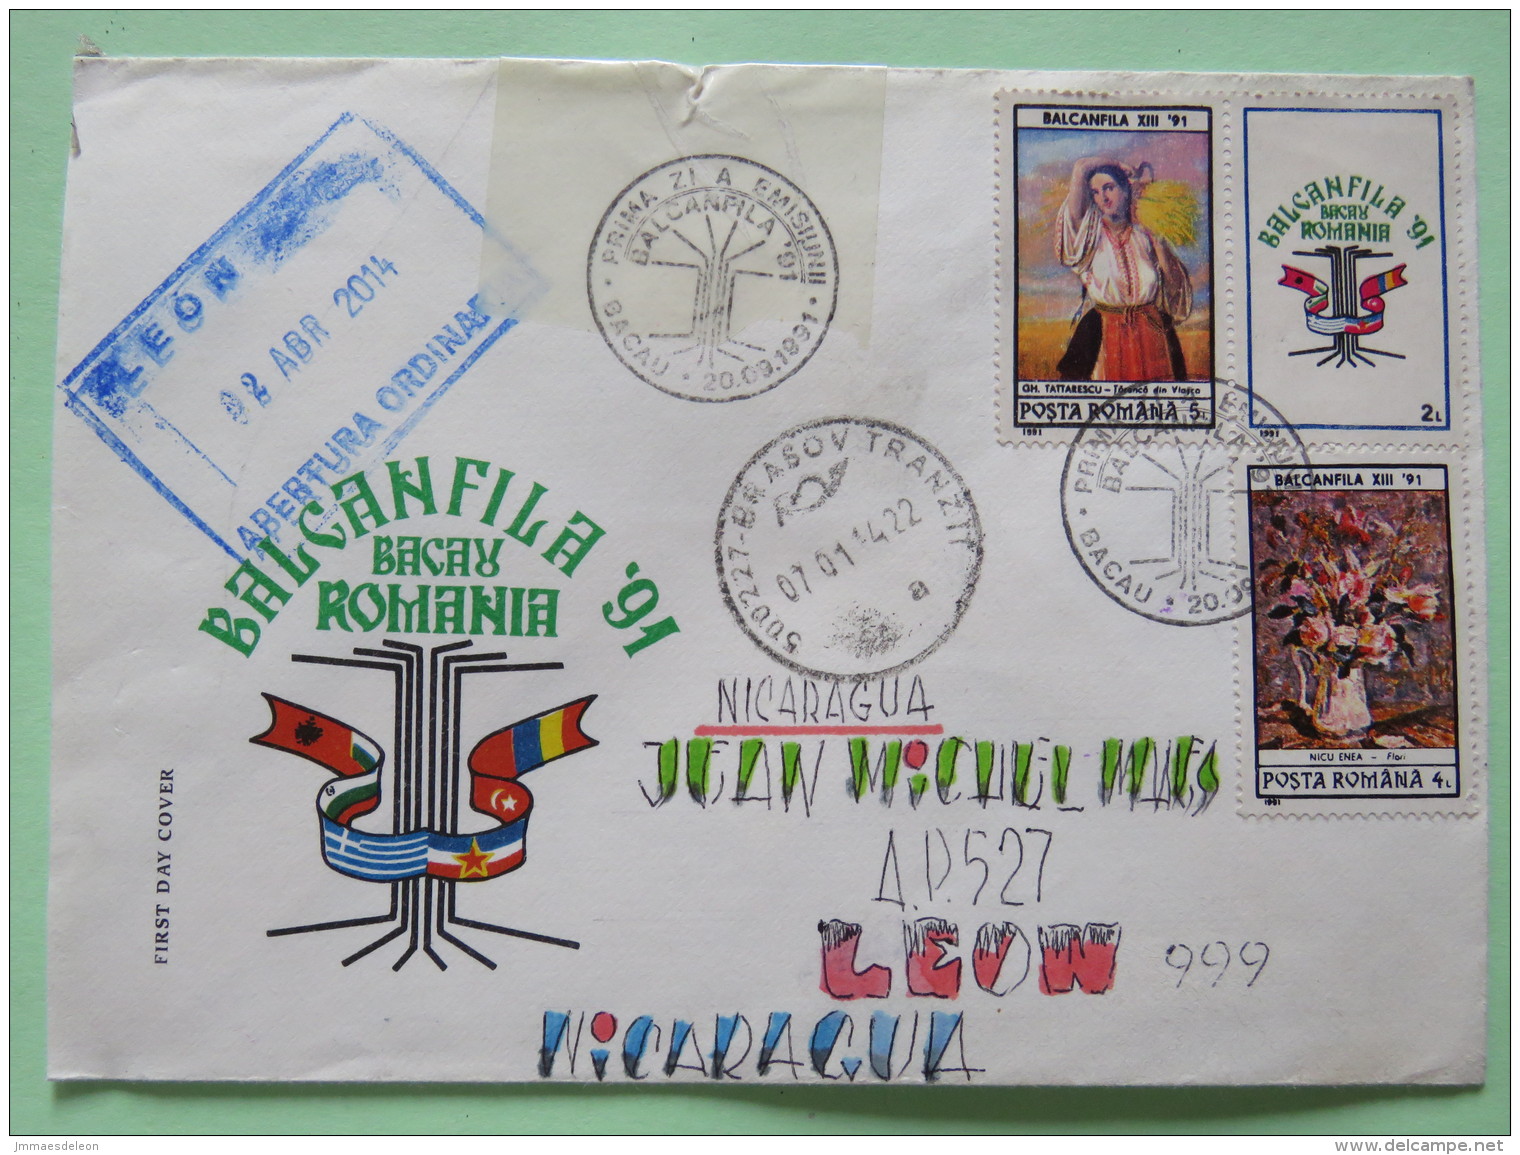 Romania 2014 FDC Cover Bacau (1991) Brasov To Nicaragua - BALCANFILA 91 + Label - Plant Flower On Back - Cartas & Documentos